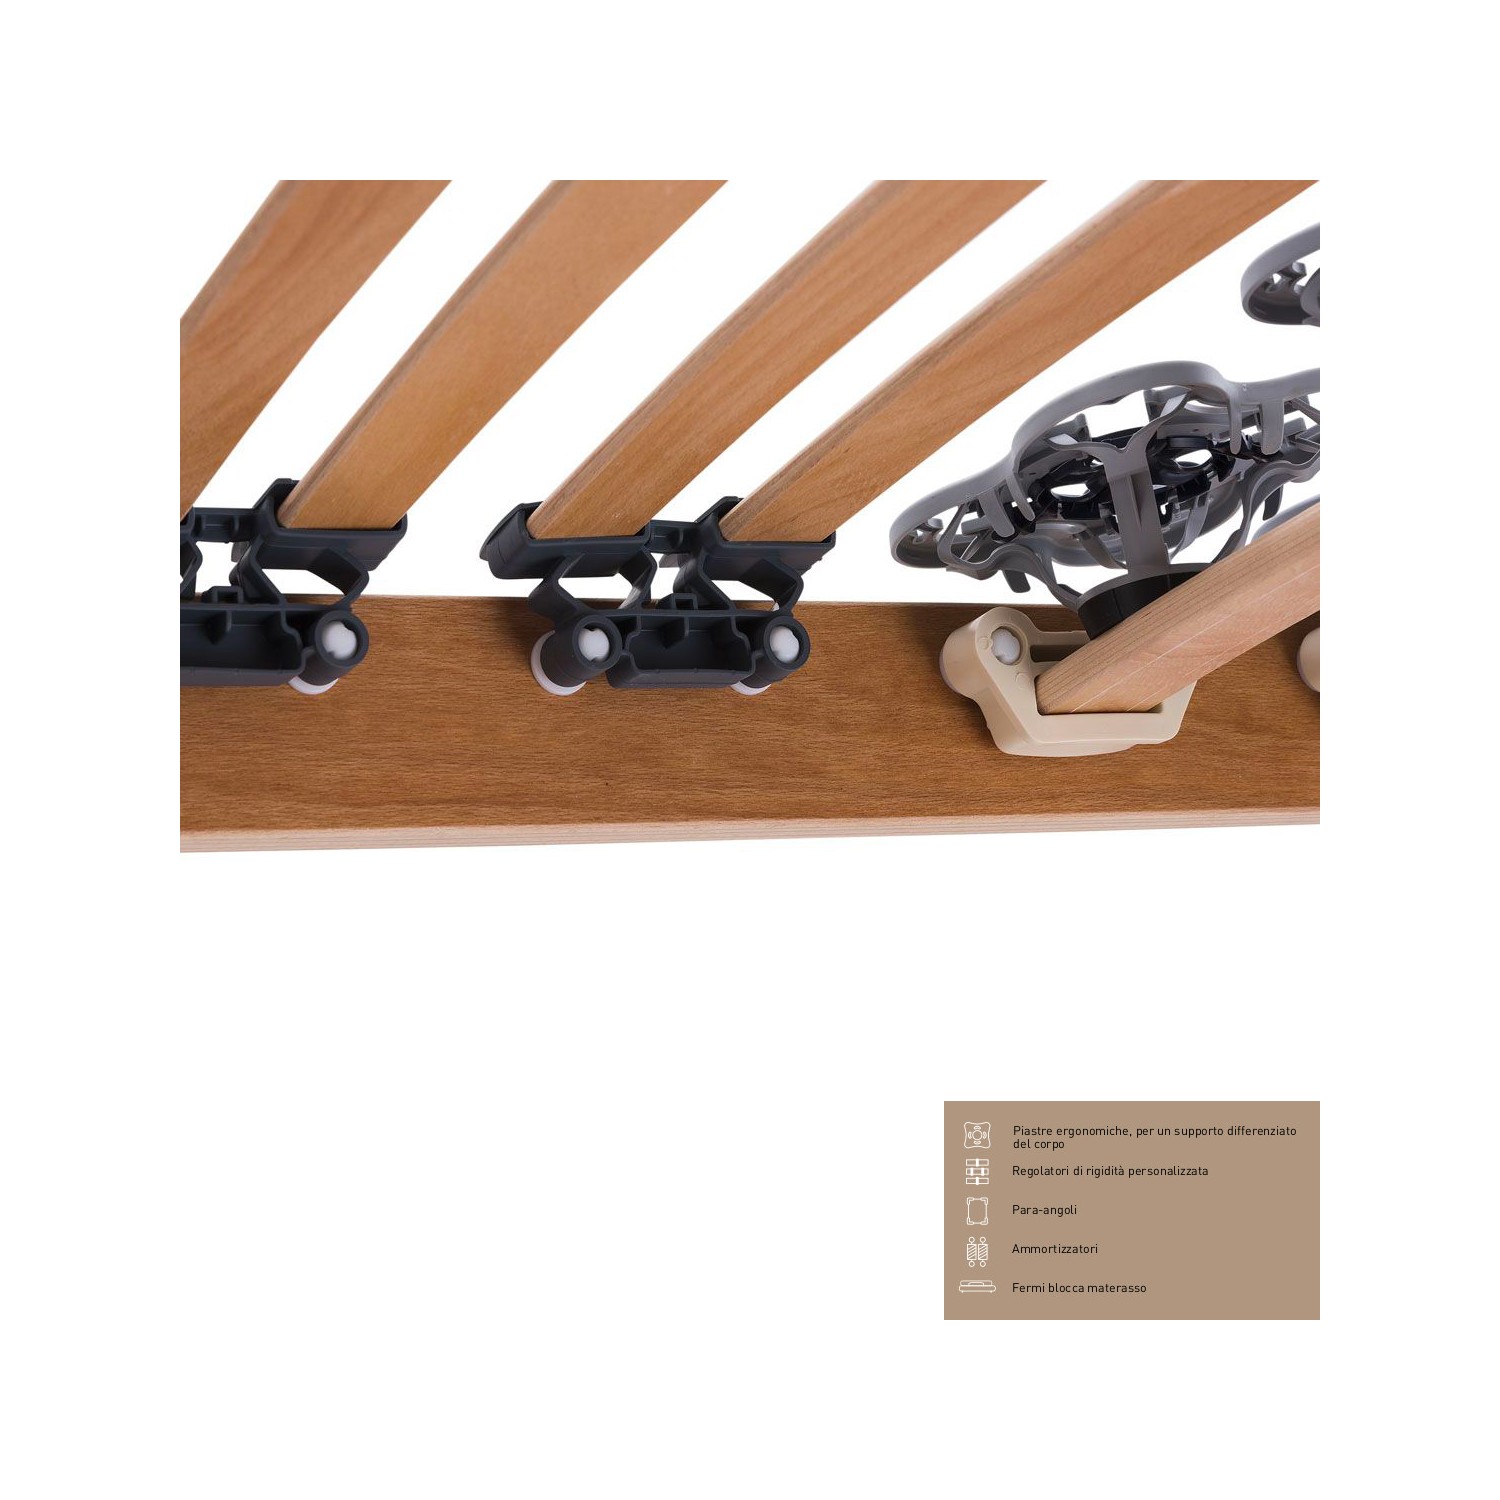 Rete Magniflex ERGO DUE FISSA cm 80 x 190/195/200 piastre ergonomiche, regolatori di rigidità doghe legno